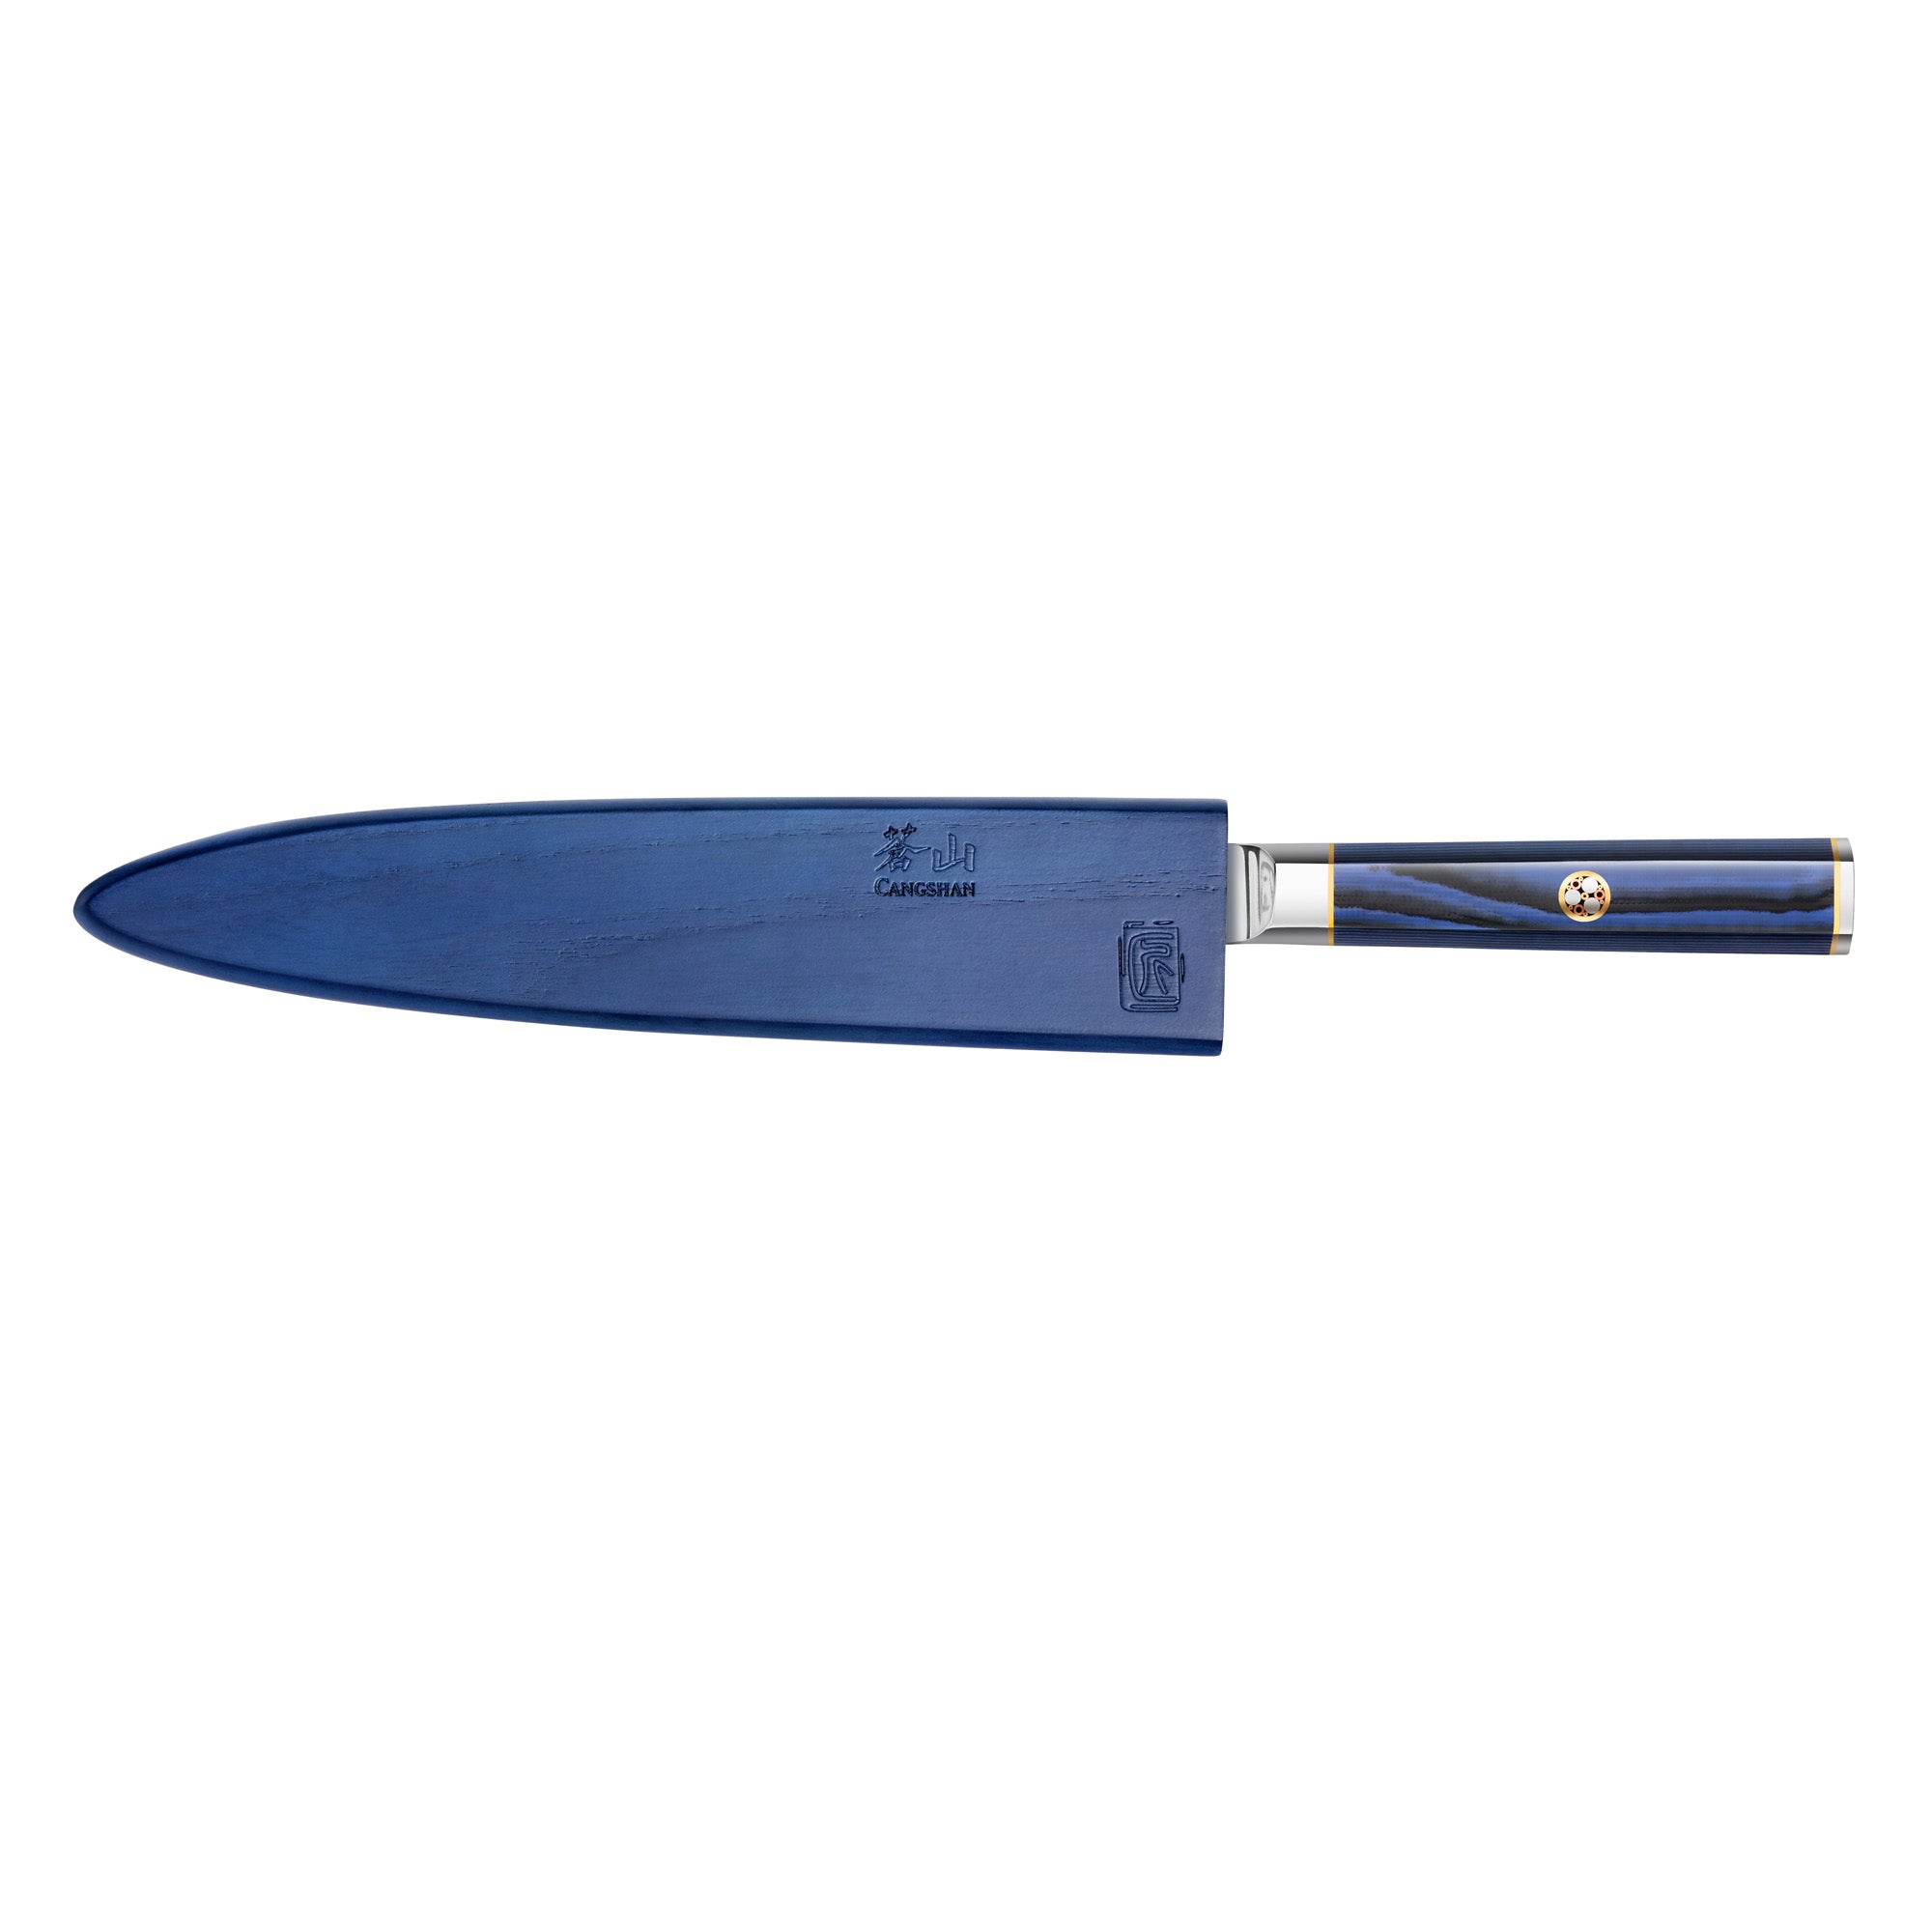 Cangshan Kita 8" Sashimi Knife